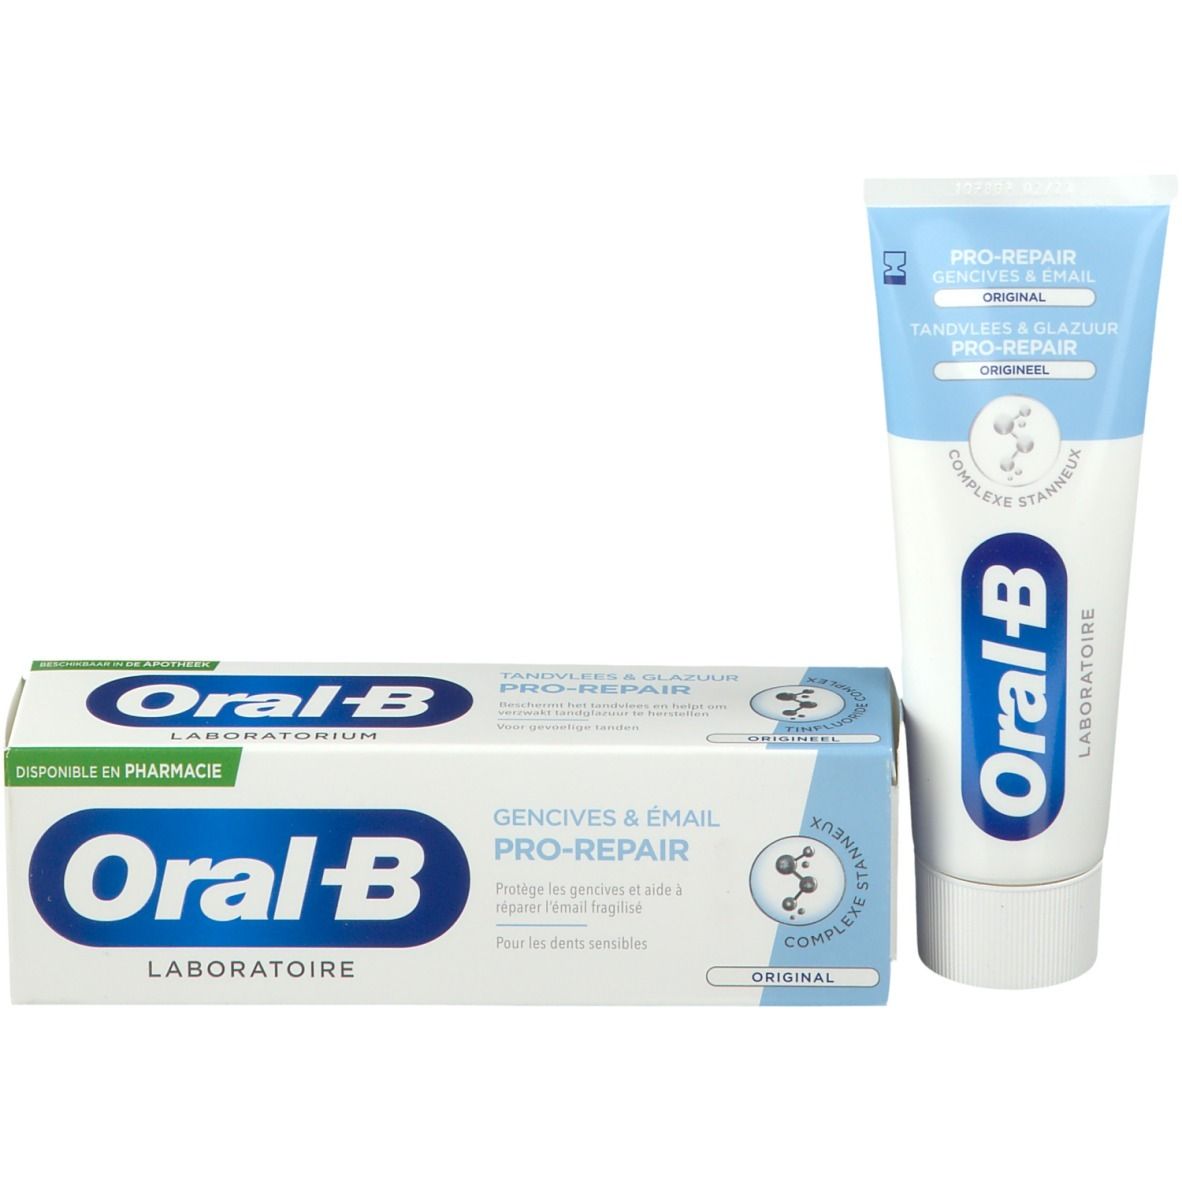 Oral-B Dentifrice Lab Pro-Repair Original